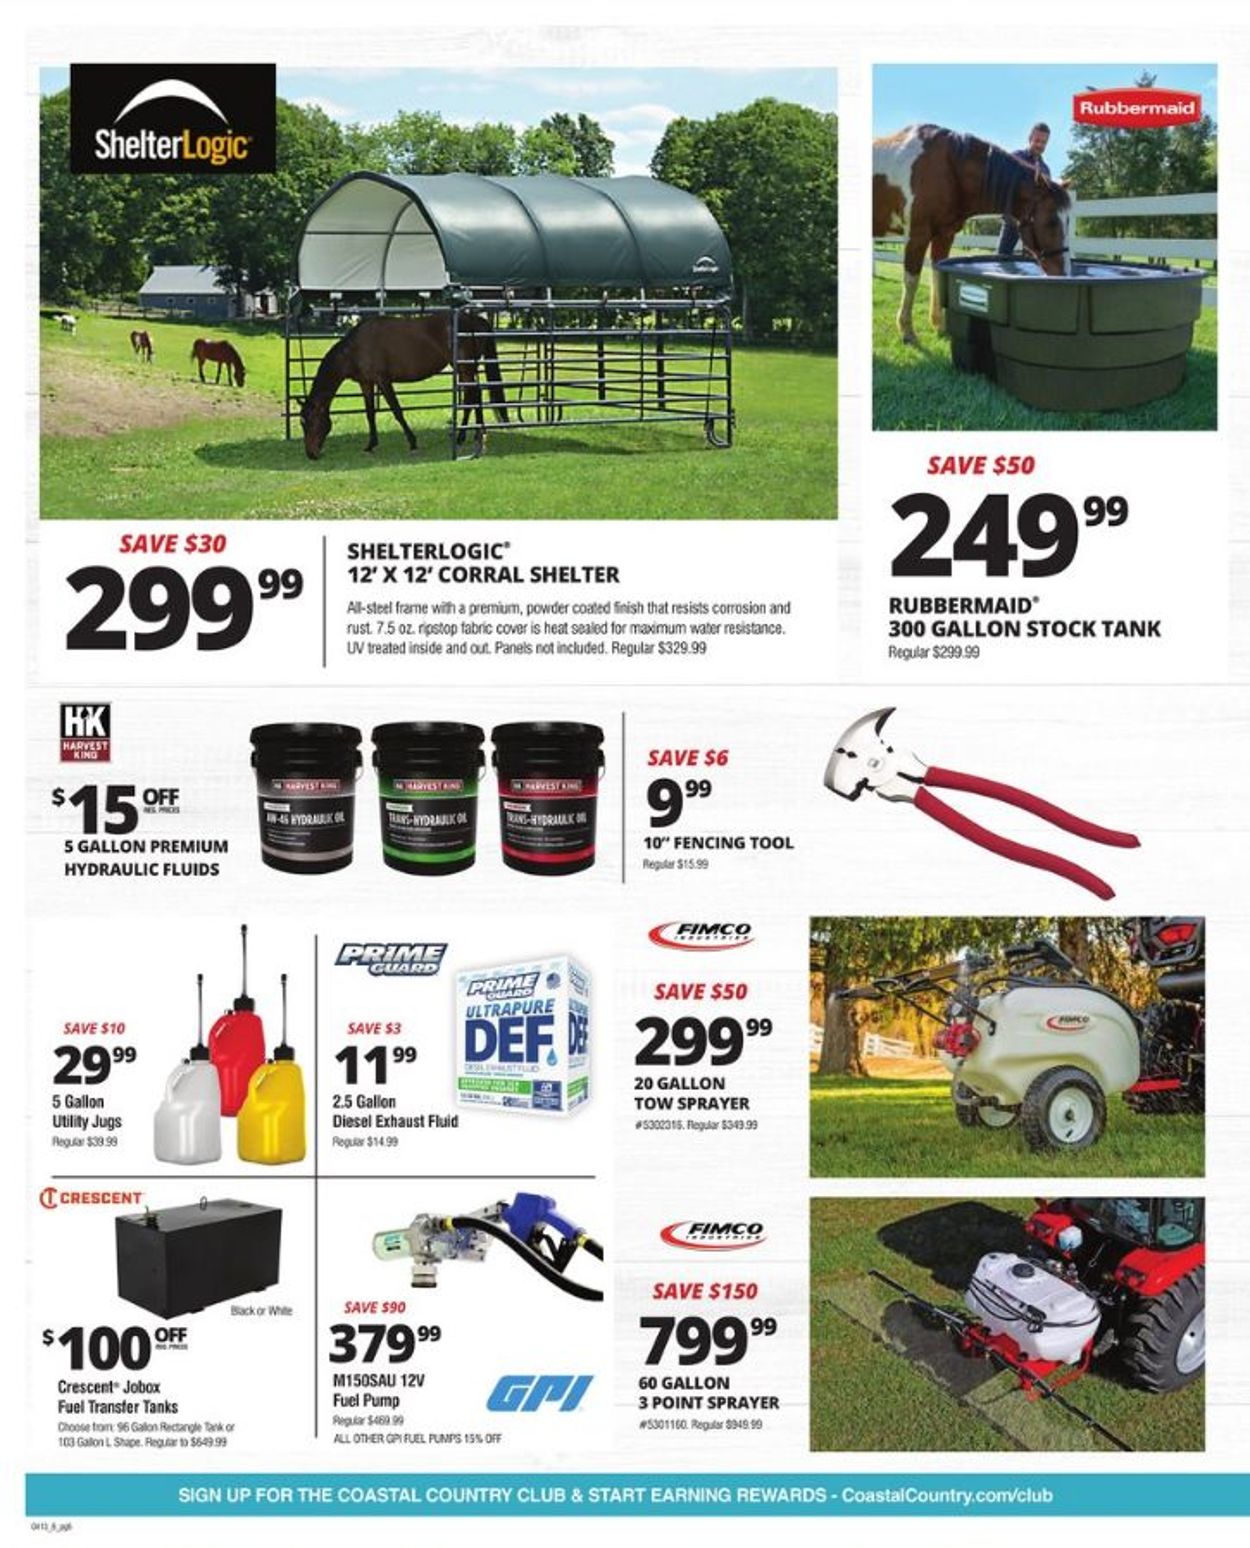 Coastal Farm & Ranch Ad from 04/13/2022